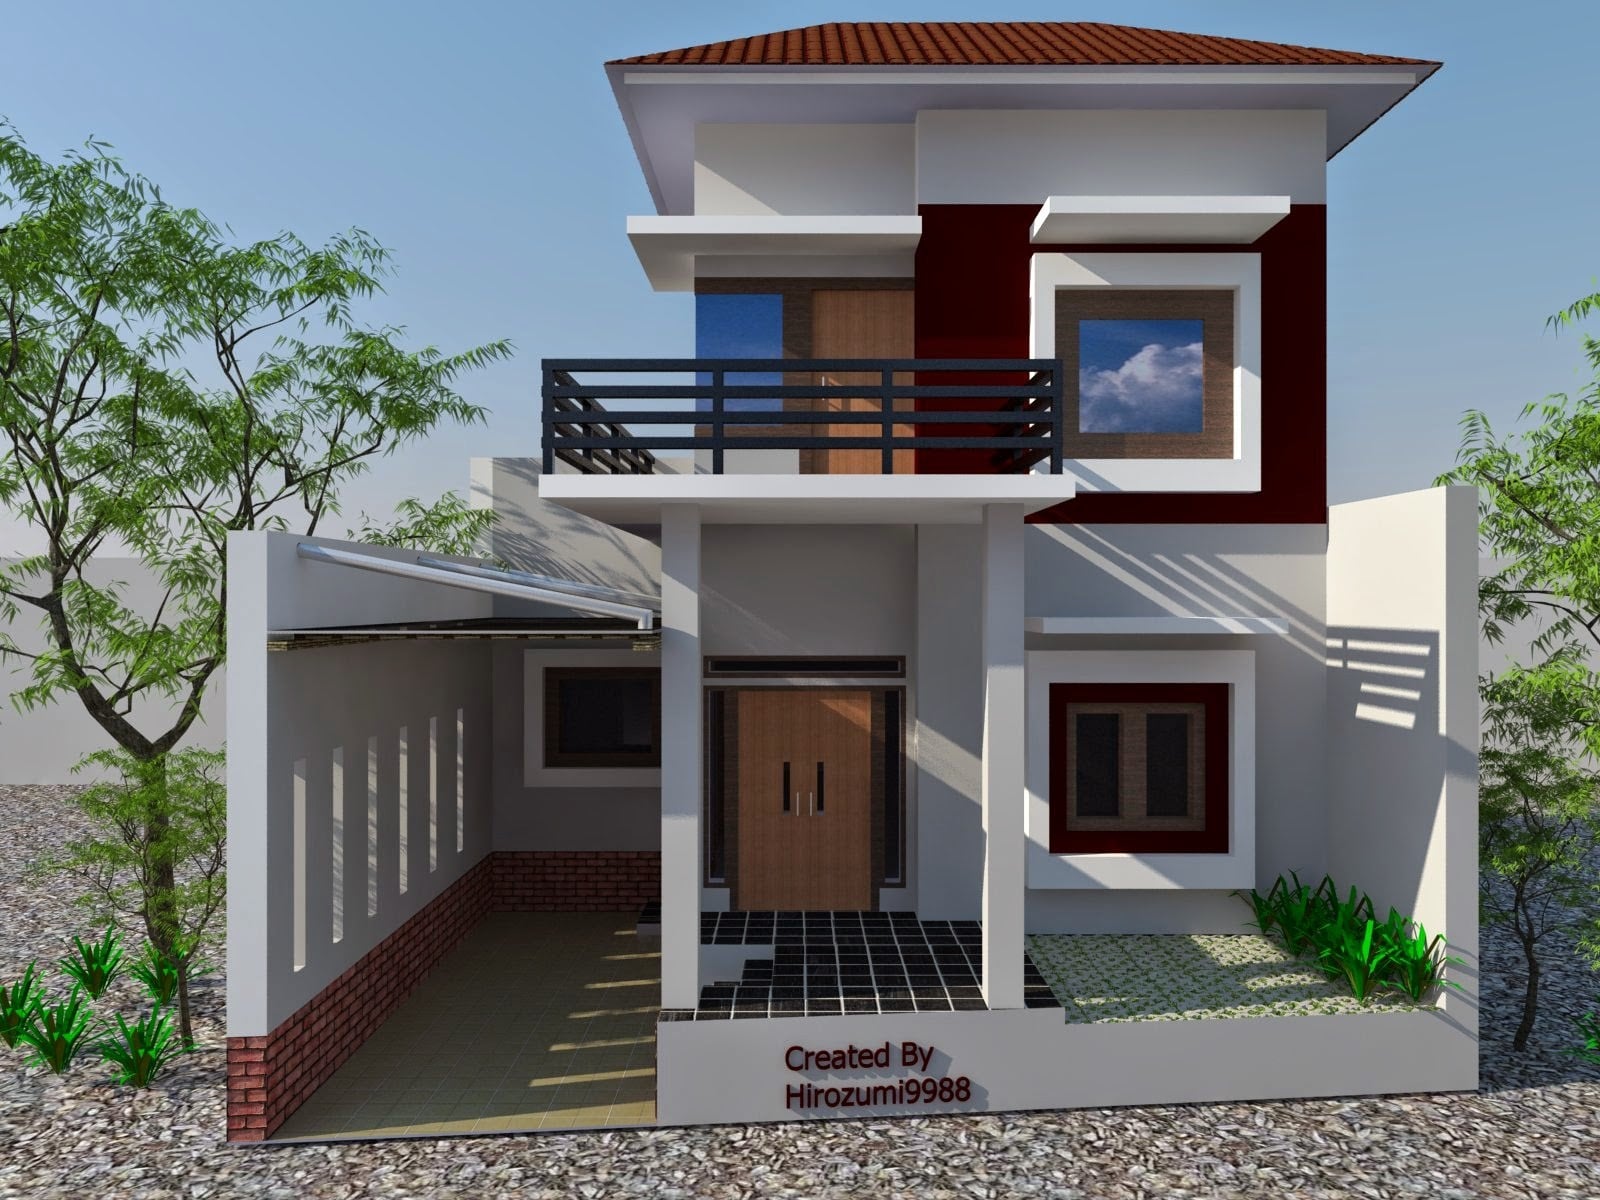 98 Model Desain Rumah Minimalis Modern Tanpa Atap Genteng Paling